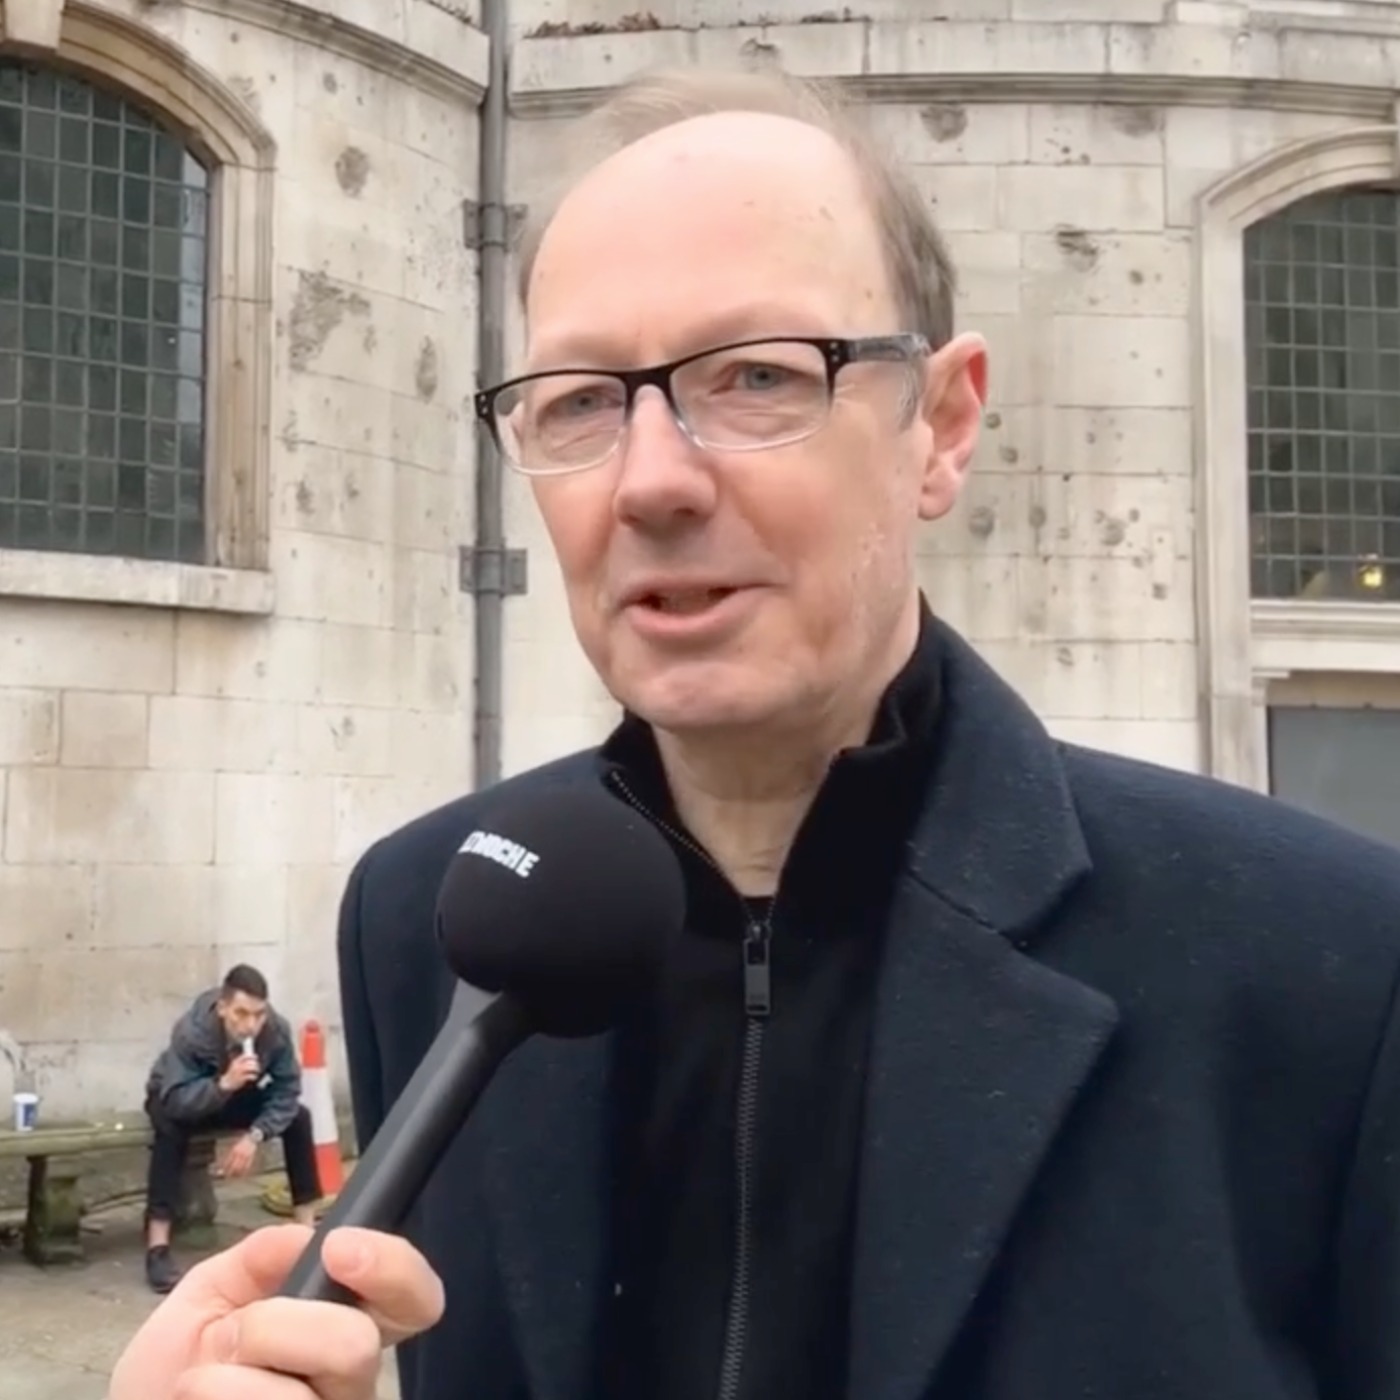 EU-Abgeordneter Martin Sonneborn über den Assange-Prozess und warum Von der Leyen zurücktreten muss